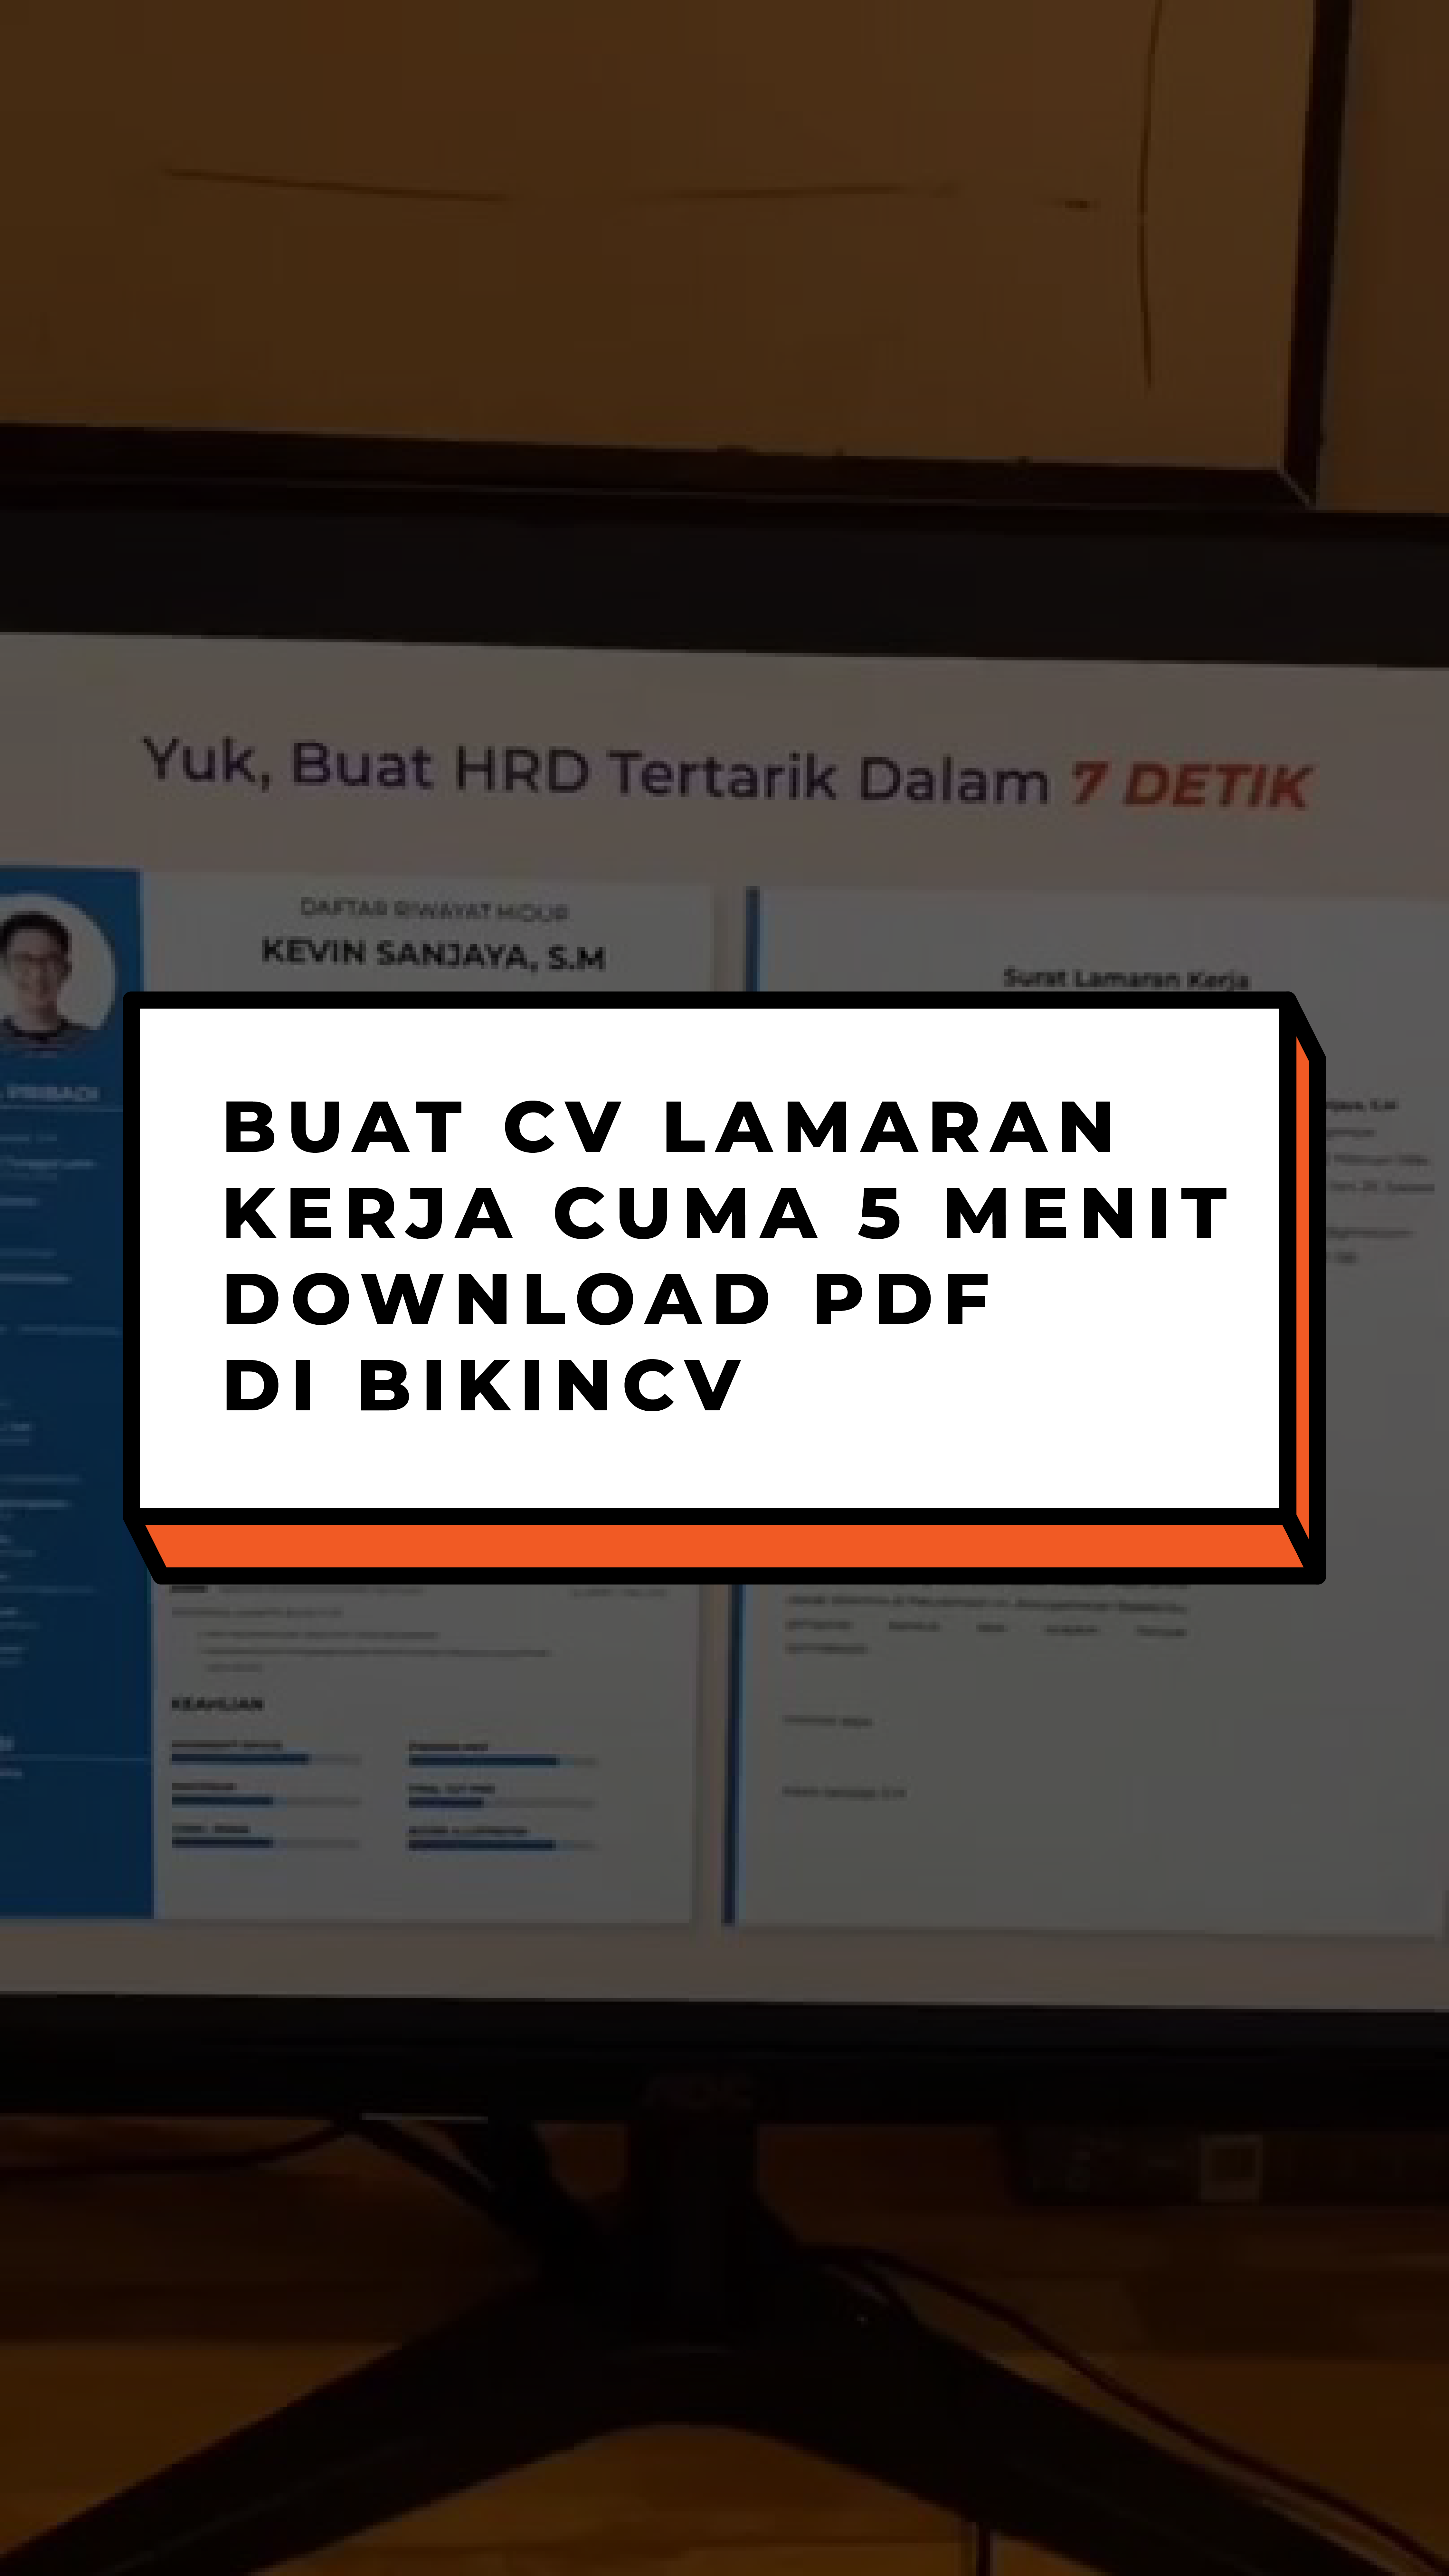 Buat CV Lamaran Kerja Cuma 5menit download PDF di BikinCV